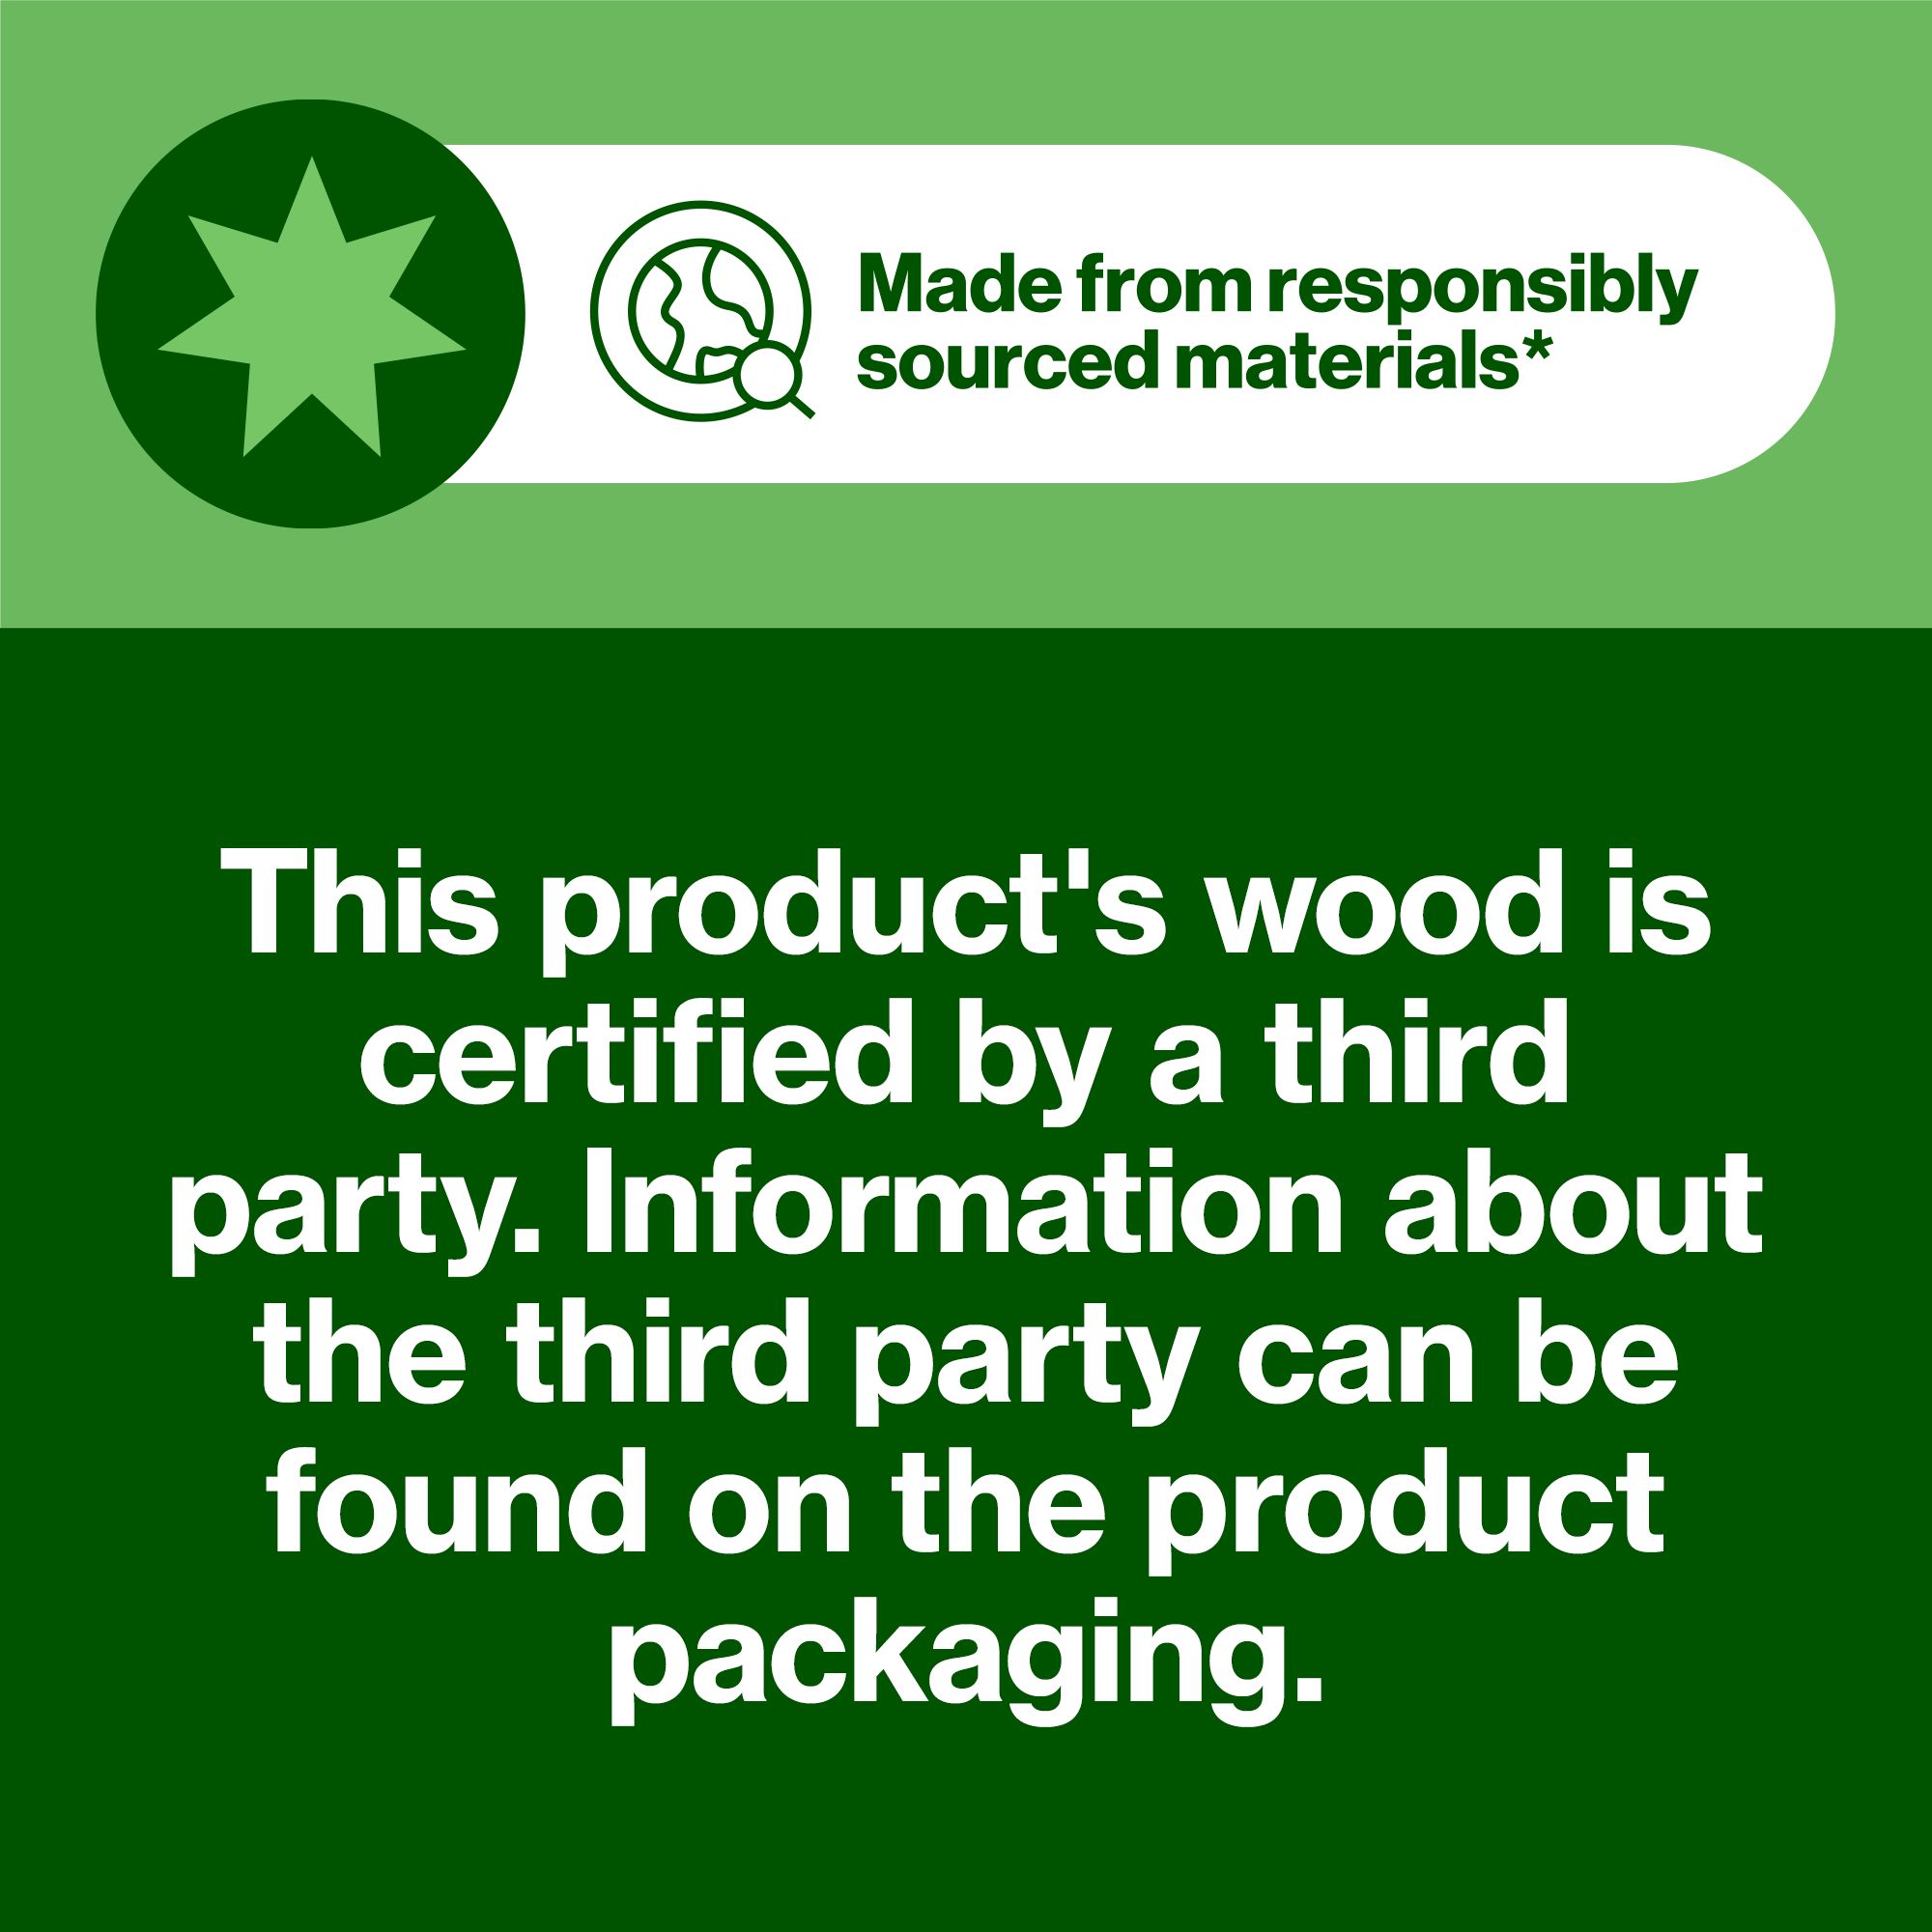 Hardwood Plywood (L)1.83m (W)0.61m (T)18mm